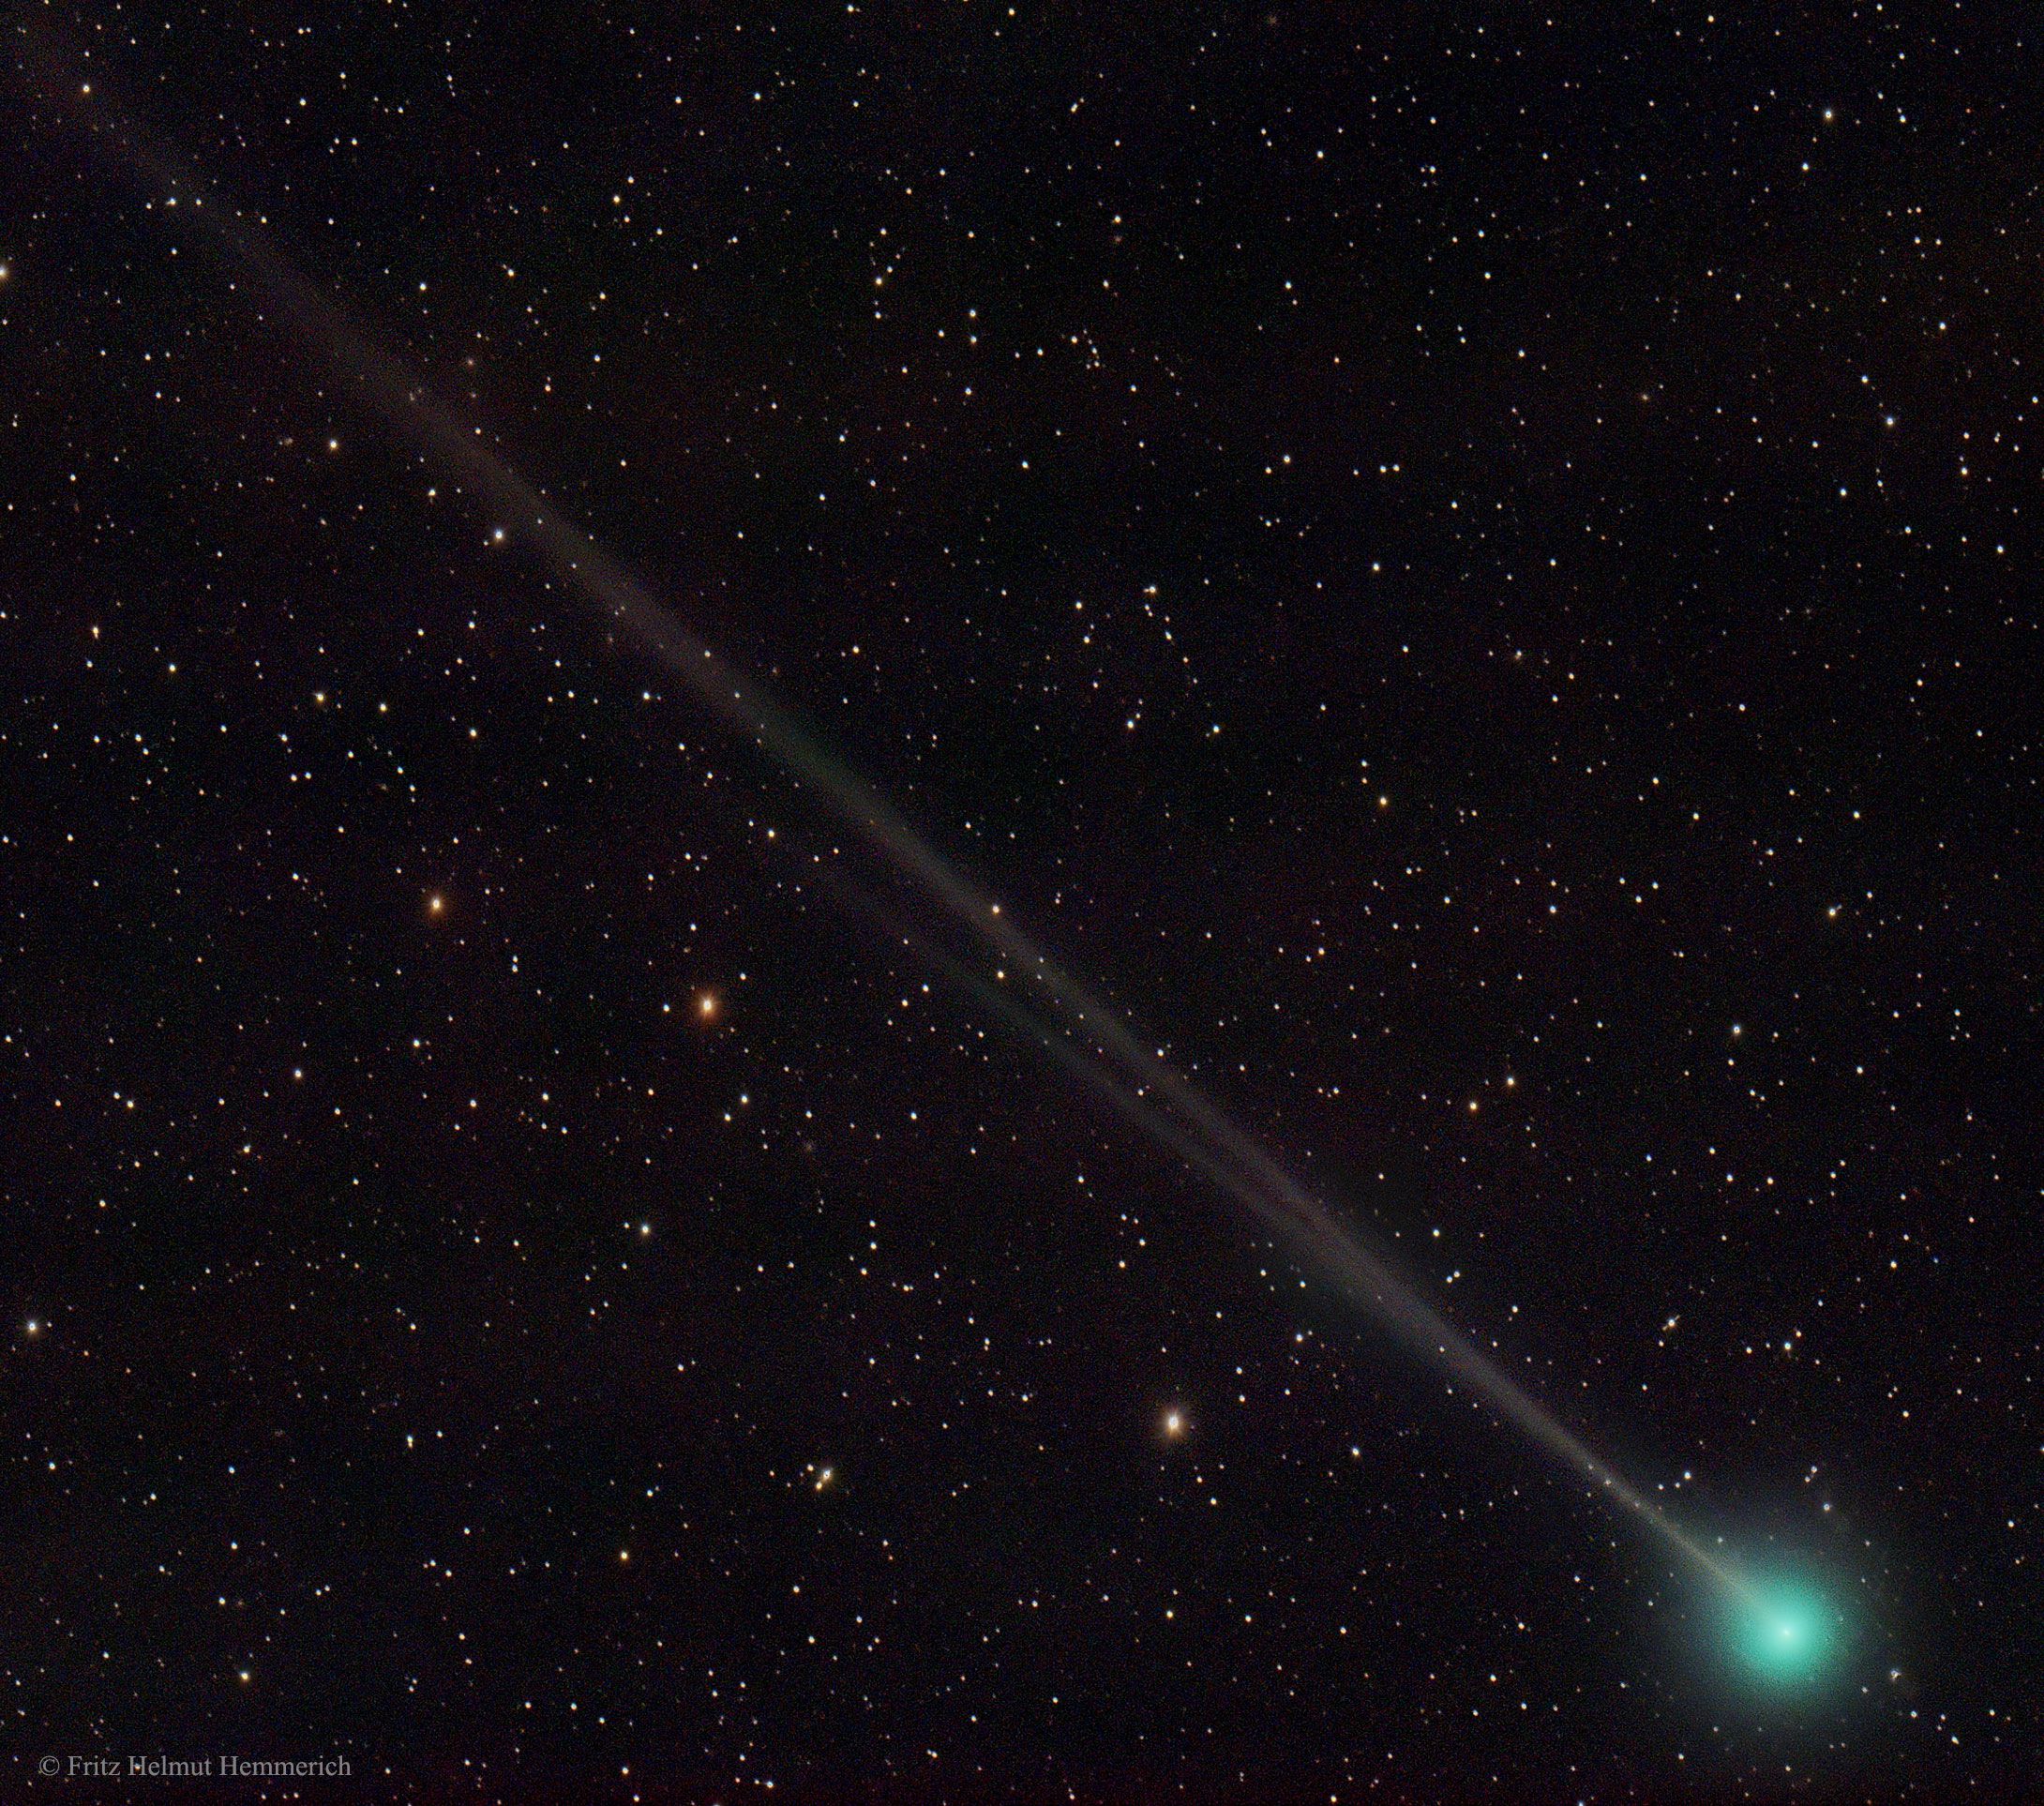  Comet 45P Returns 